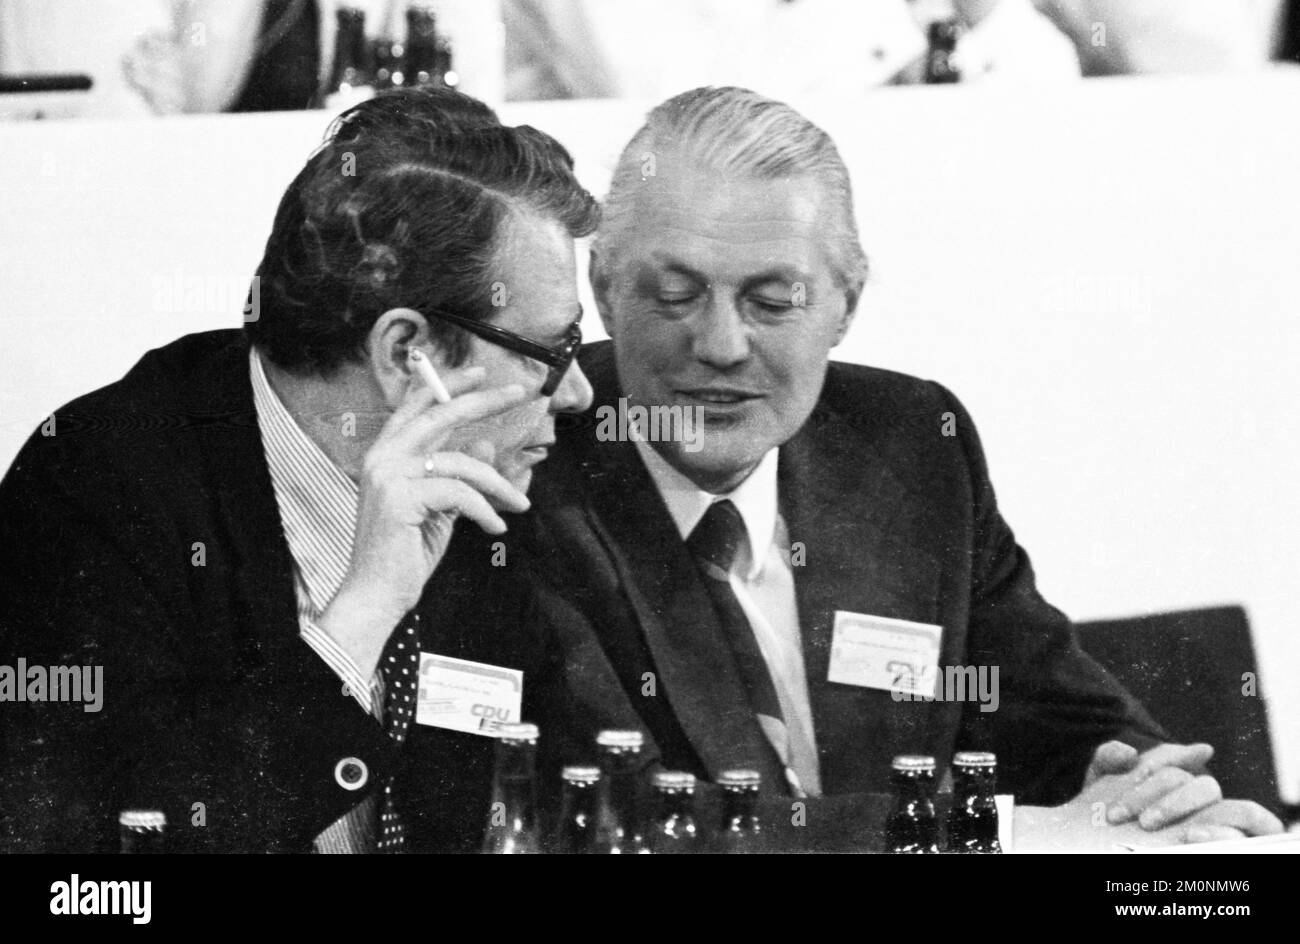 Parteitag der Christdemokratischen Union (CDU) am 24.5.1976 in Hannover, Heinrich Köppler, Gehard Stoltenberg f.l, Deutschland, Europa Stockfoto